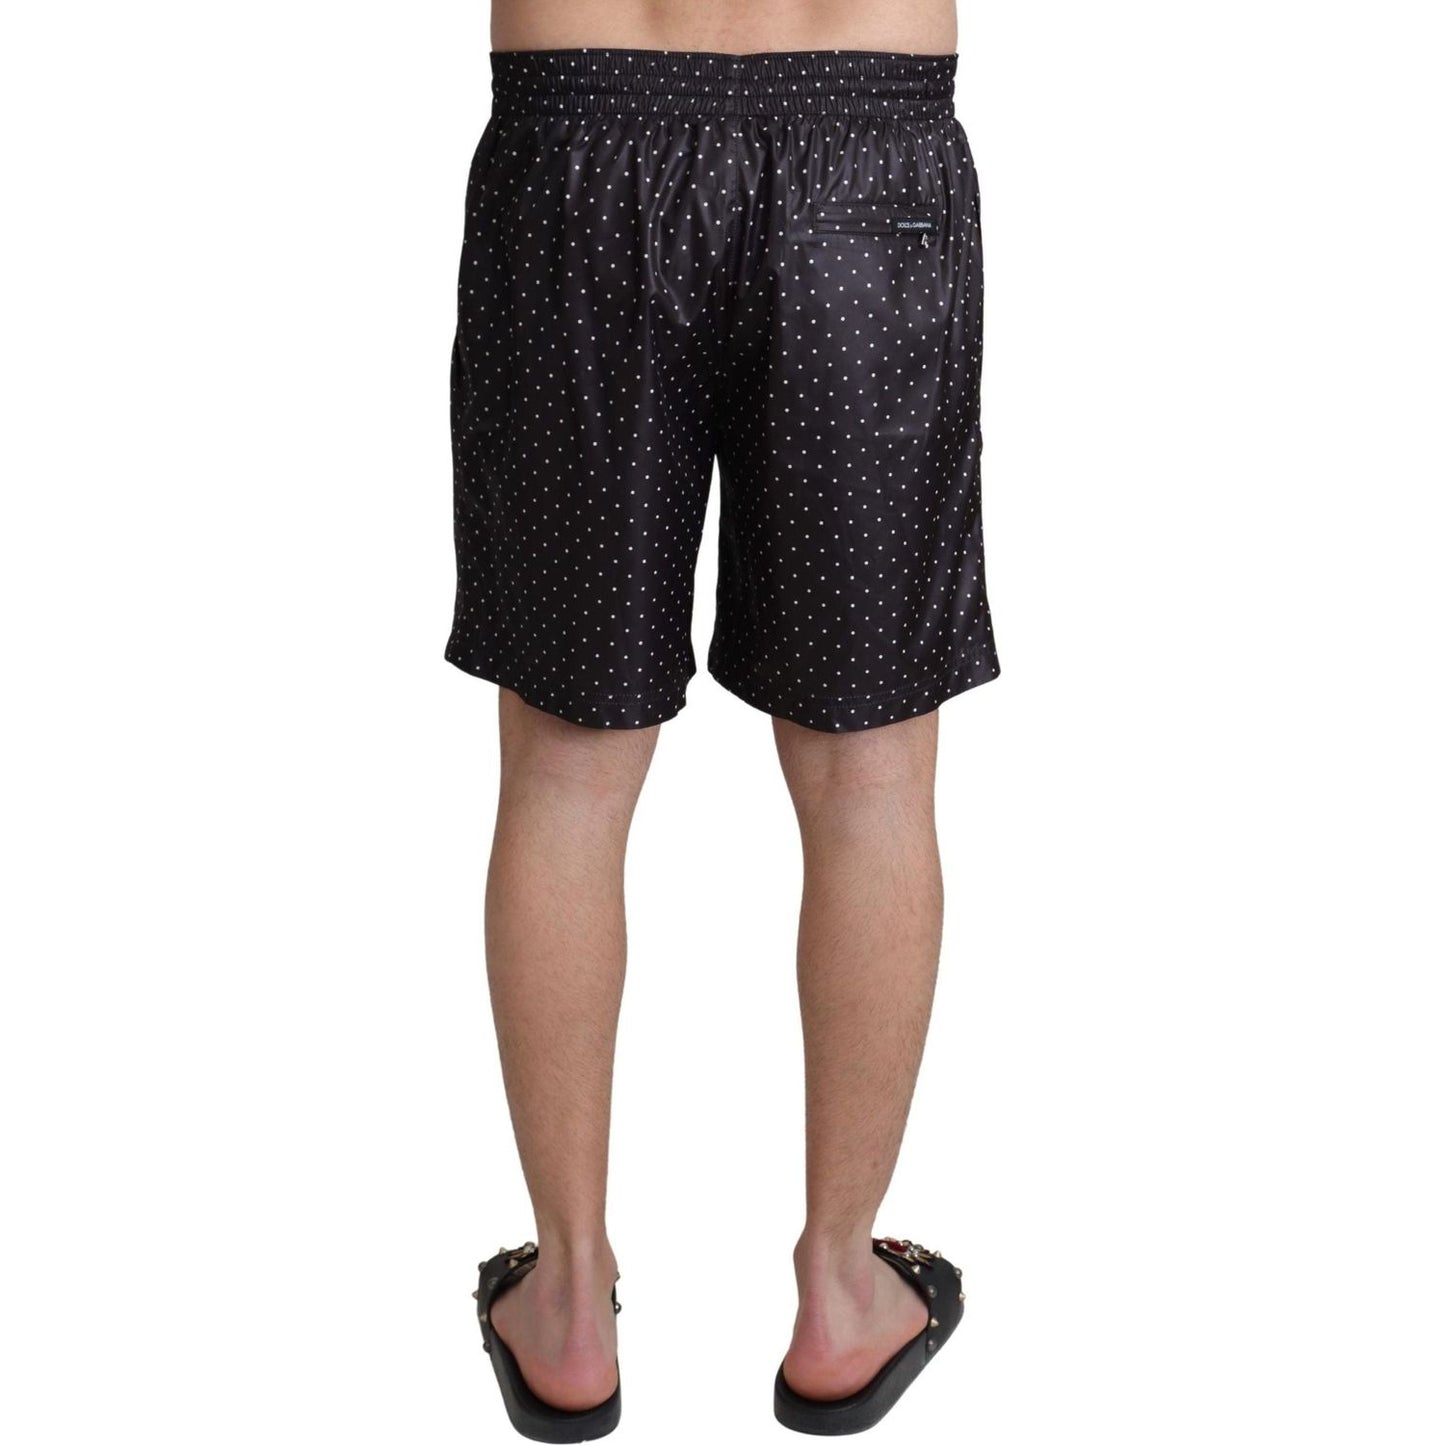 Dolce & Gabbana Chic Black Polka Dot Men's Swim Trunks black-polka-dot-print-beachwear-swimwear